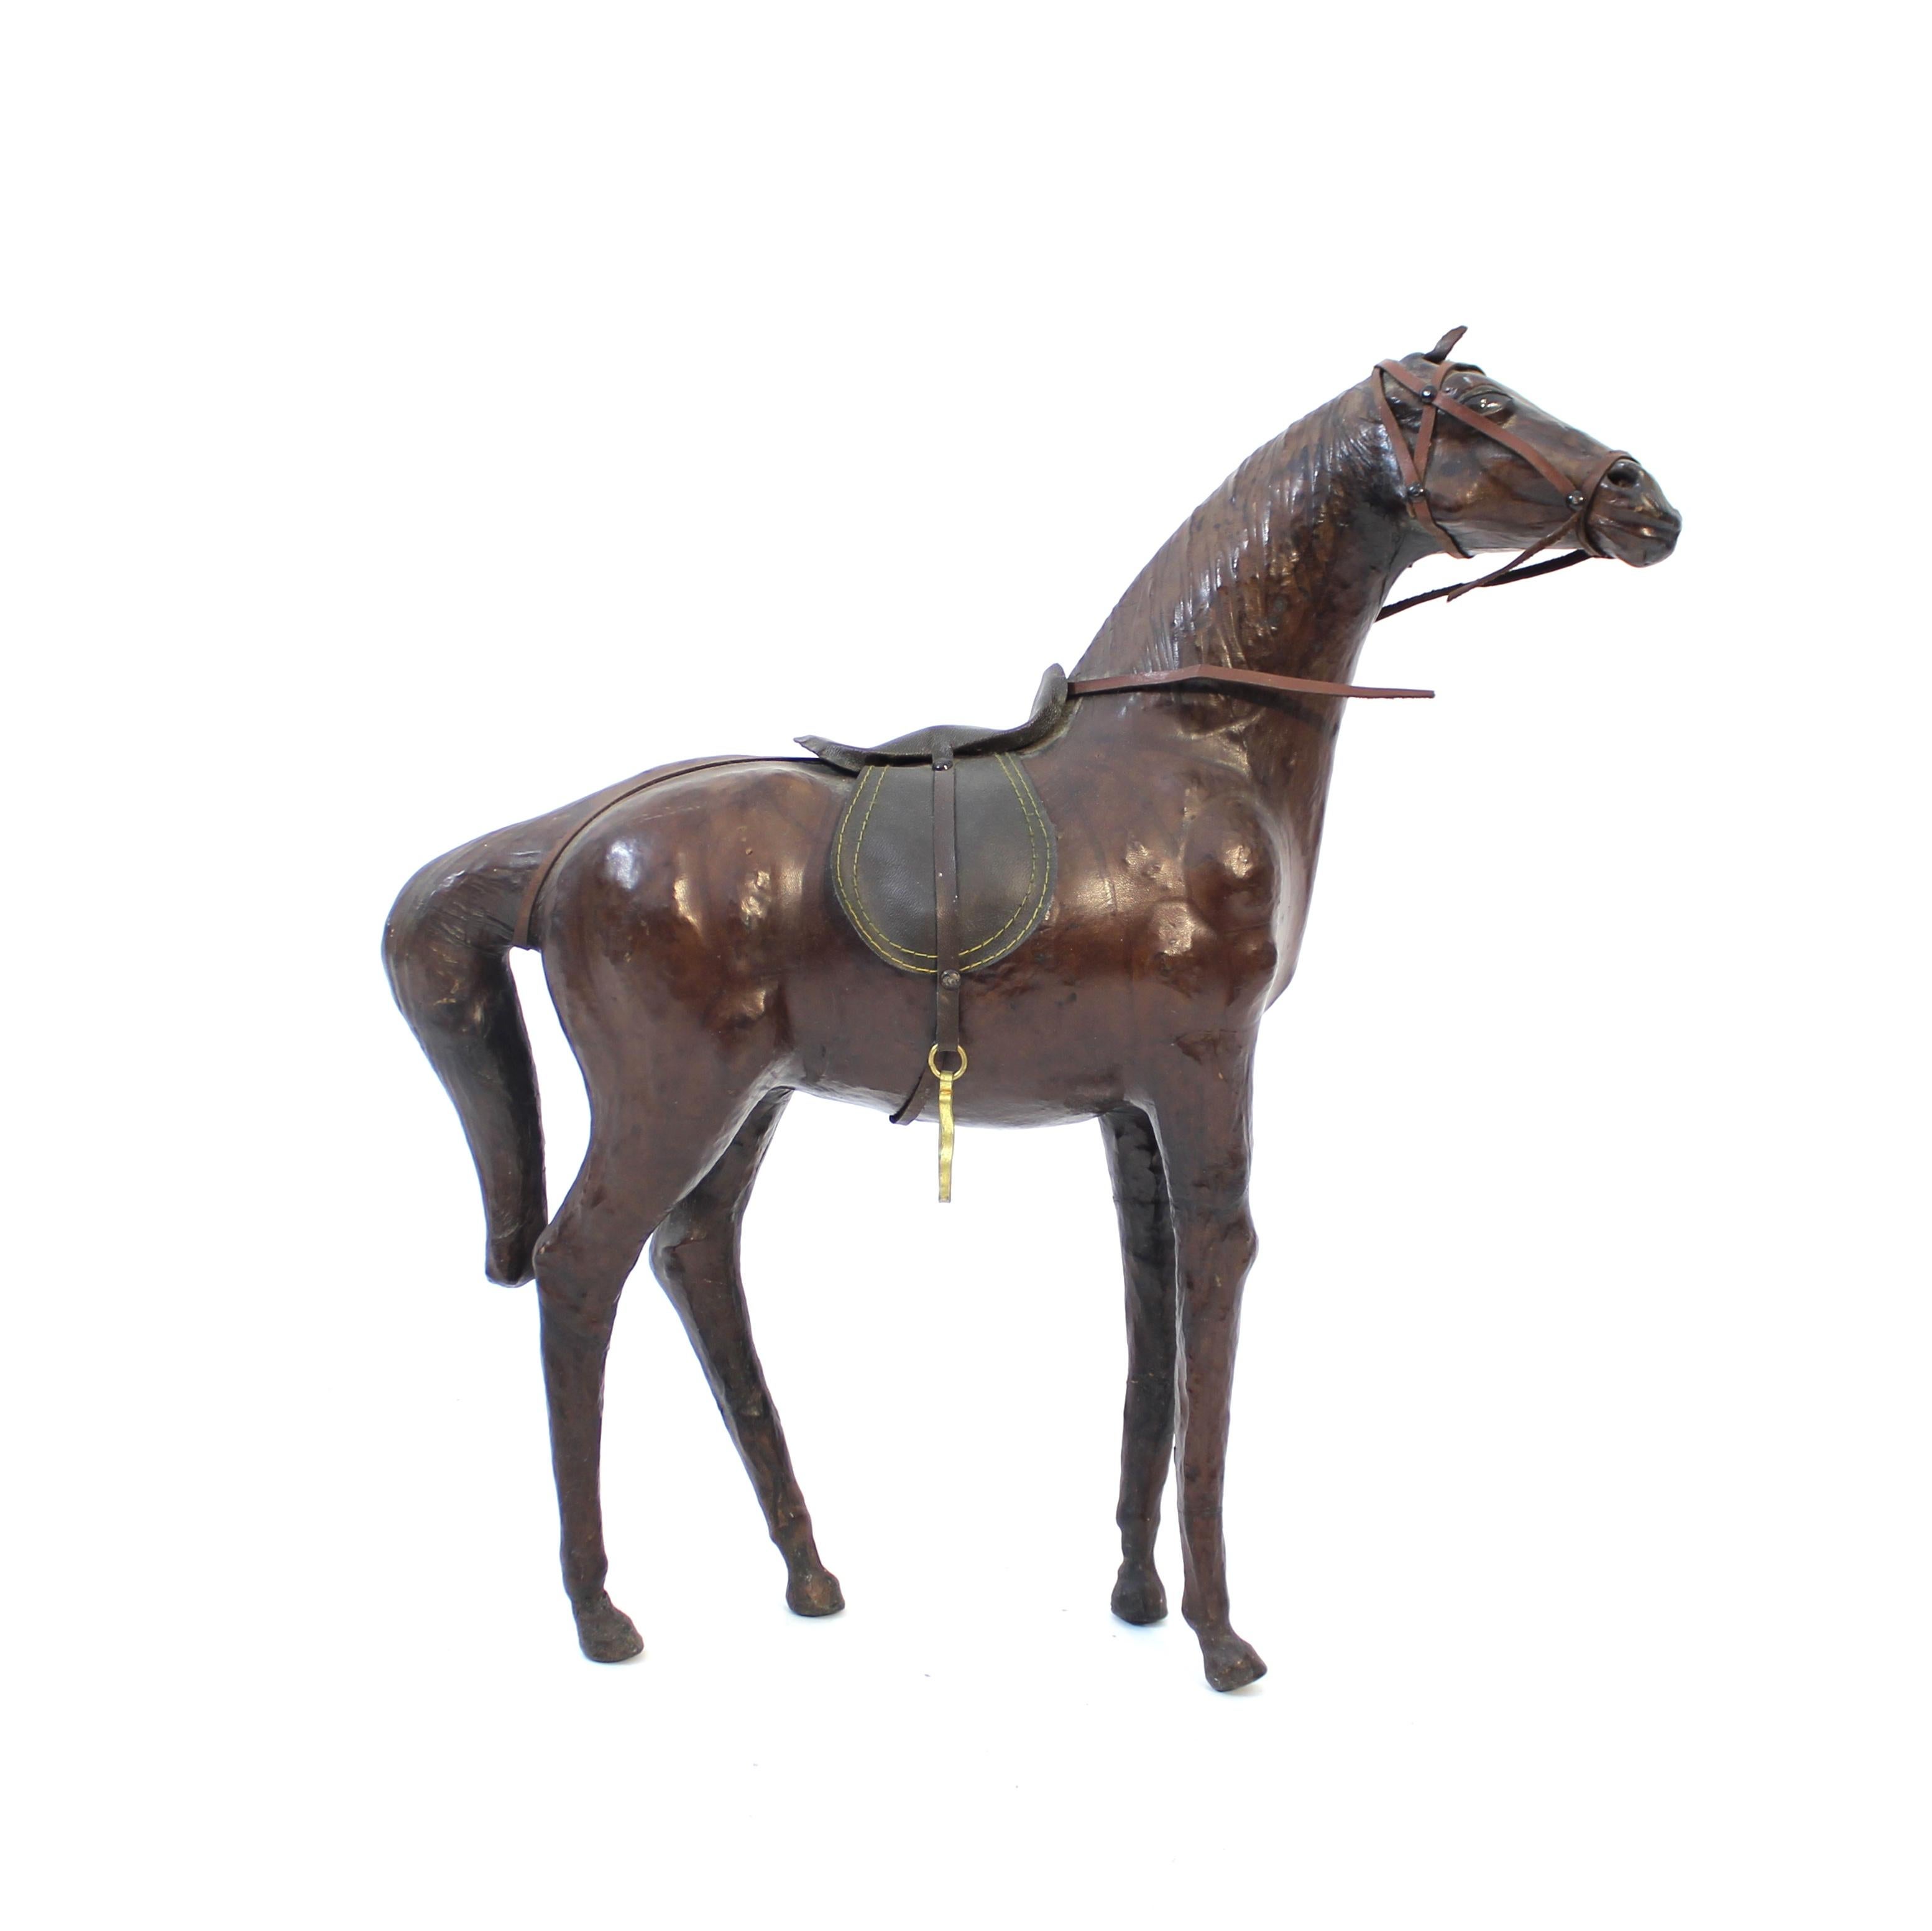 Pferdeskulptur / Modell aus echtem Leder aus den 1960er oder 1970er Jahren. Gut gemacht mit guten Proportionen und Details. Sehr dekorativ und ein lustiges und cooles Stück für jede Art von Interieur von skandinavisch modern bis eklektisch. Guter